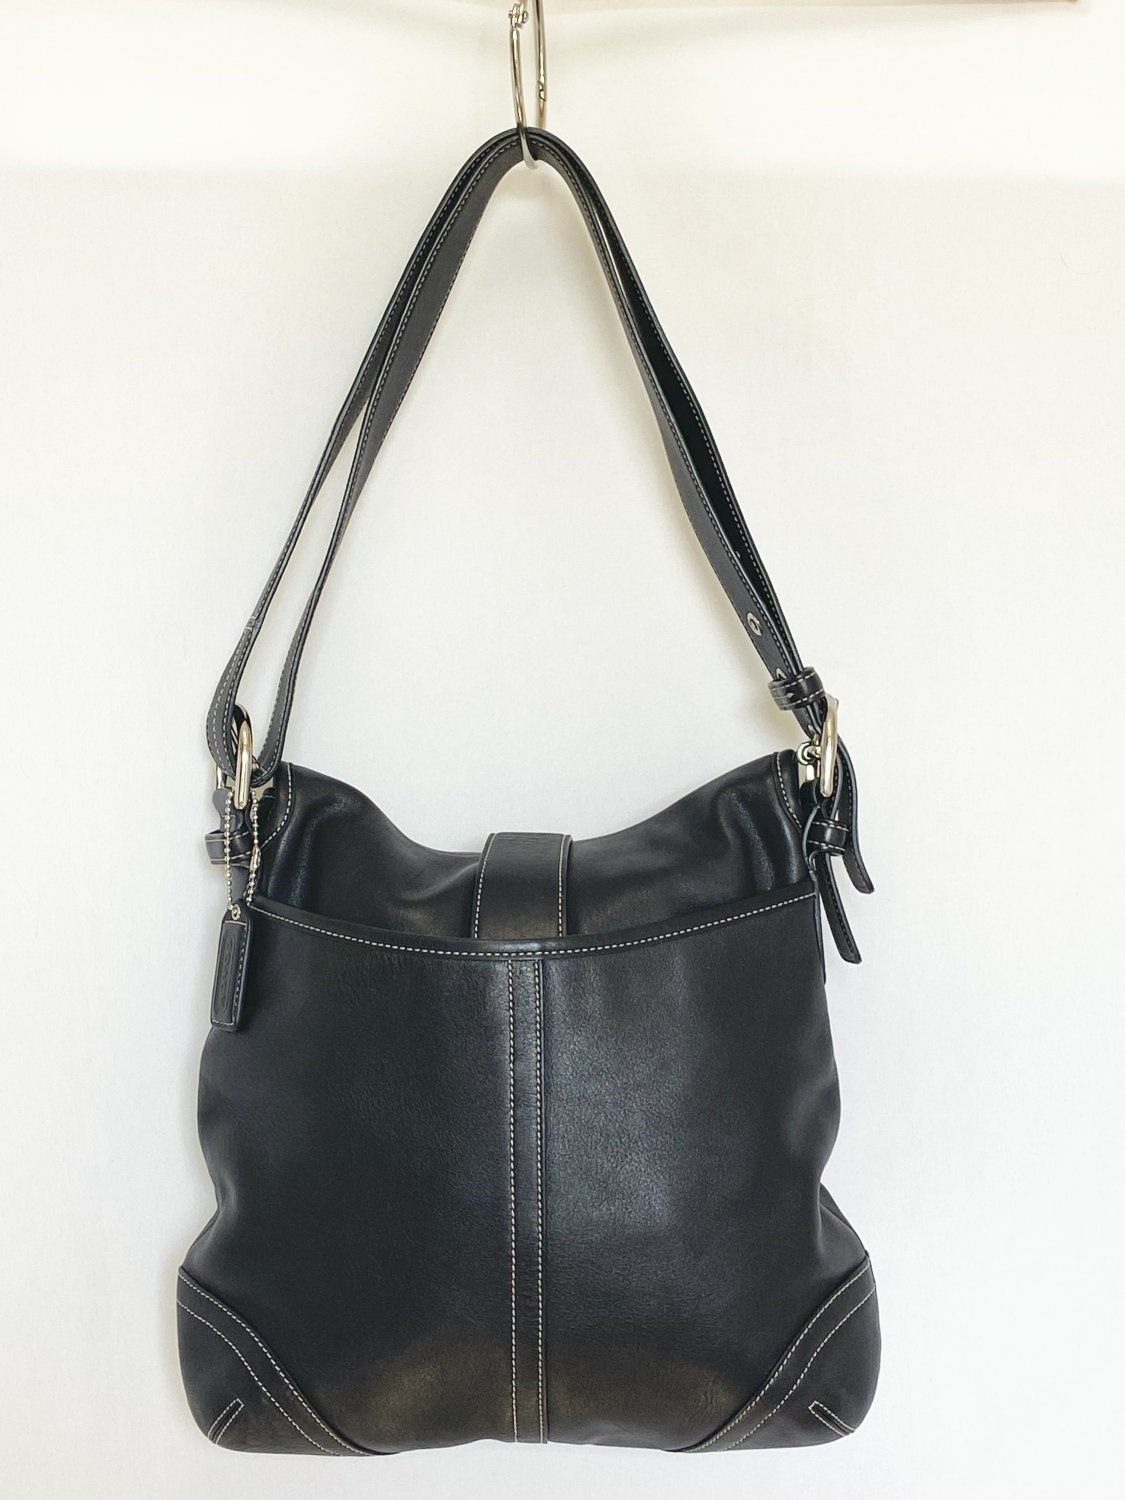 Coach Black Leather Snap Front Shoulder Bag Adjustable Strap - Like New